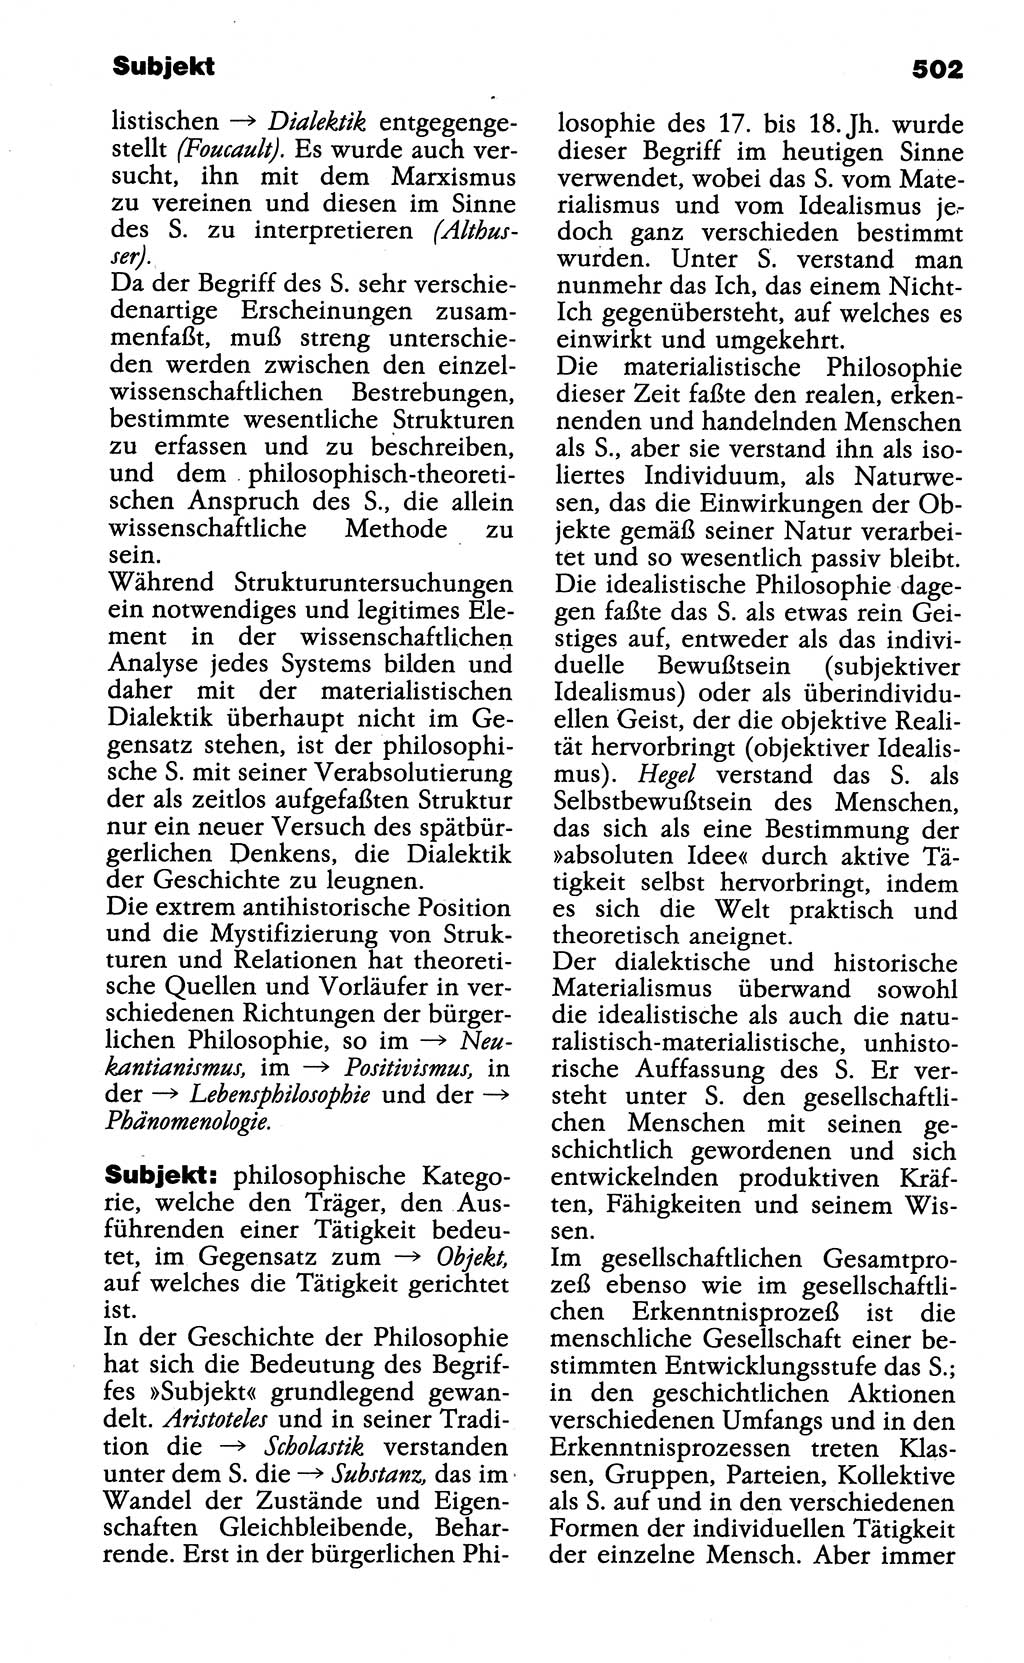 Wörterbuch der marxistisch-leninistischen Philosophie [Deutsche Demokratische Republik (DDR)] 1985, Seite 502 (Wb. ML Phil. DDR 1985, S. 502)